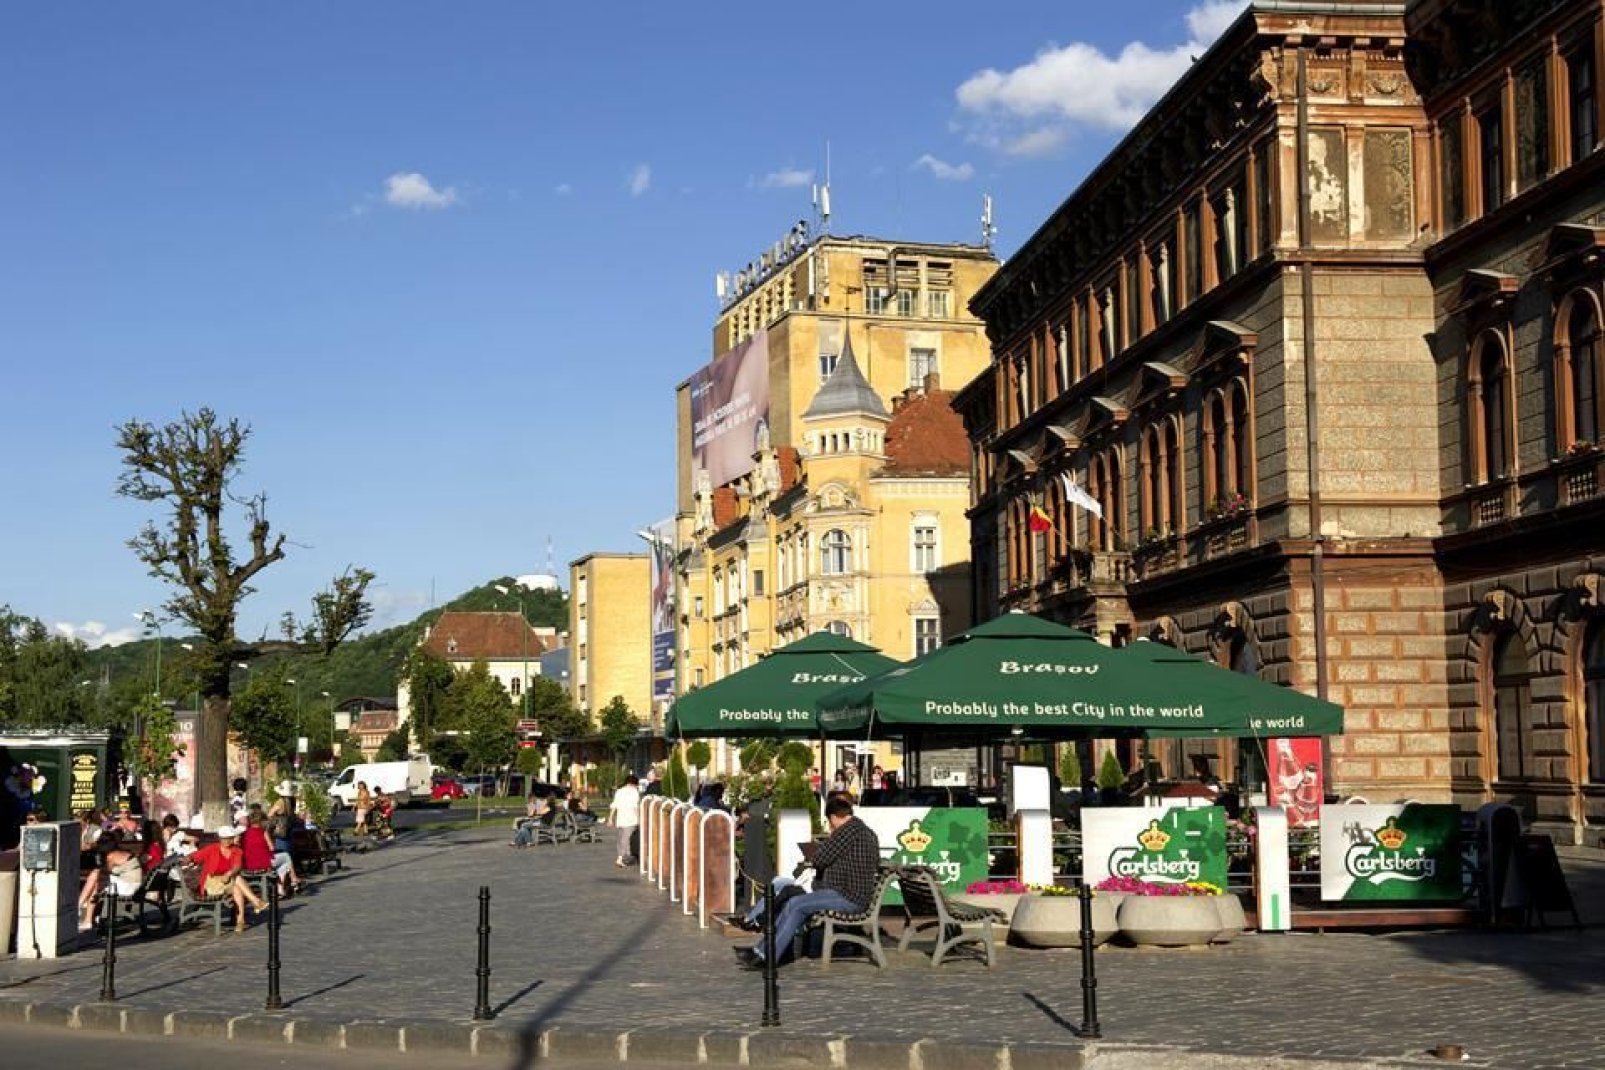 In der Fugngerzone rund um die Piata Sfatului befinden sich unzhlige Kaffeeterrassen, wo man sich in der warmen Jahreszeit angenehm entspannen kann.